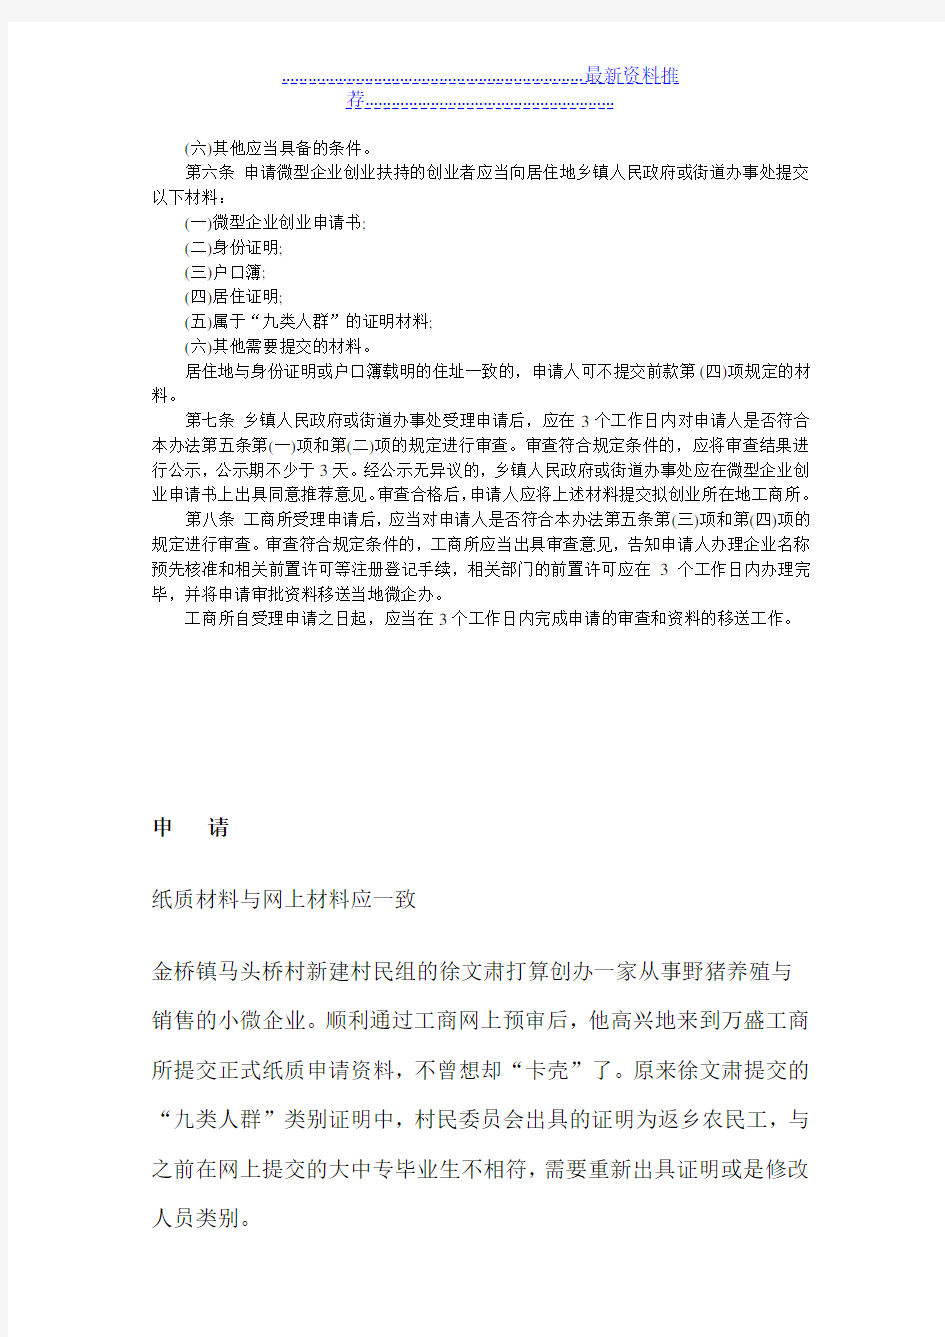 重庆市微型企业申请流程及提交材料本文由